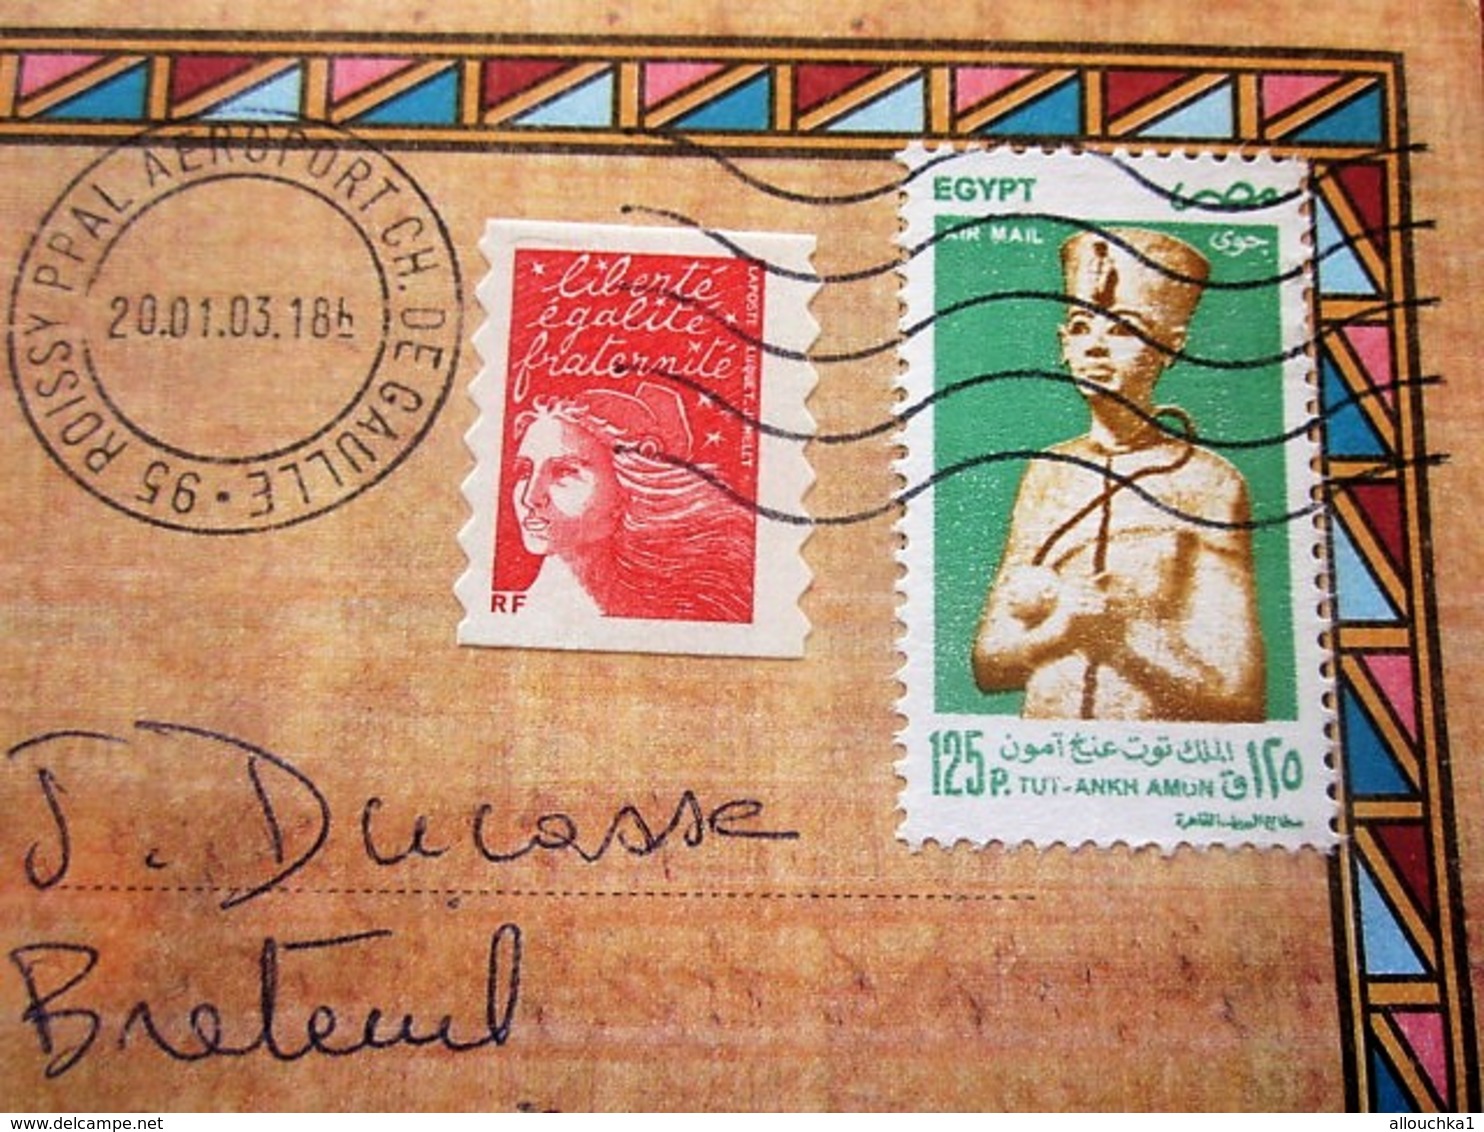 Curiosité Aff Composé Timbres Egyptien+français Posté Aéroport Orly CDG Plutot Qu'au Caire Lettre+Carte Postale Egypte - Cartas & Documentos